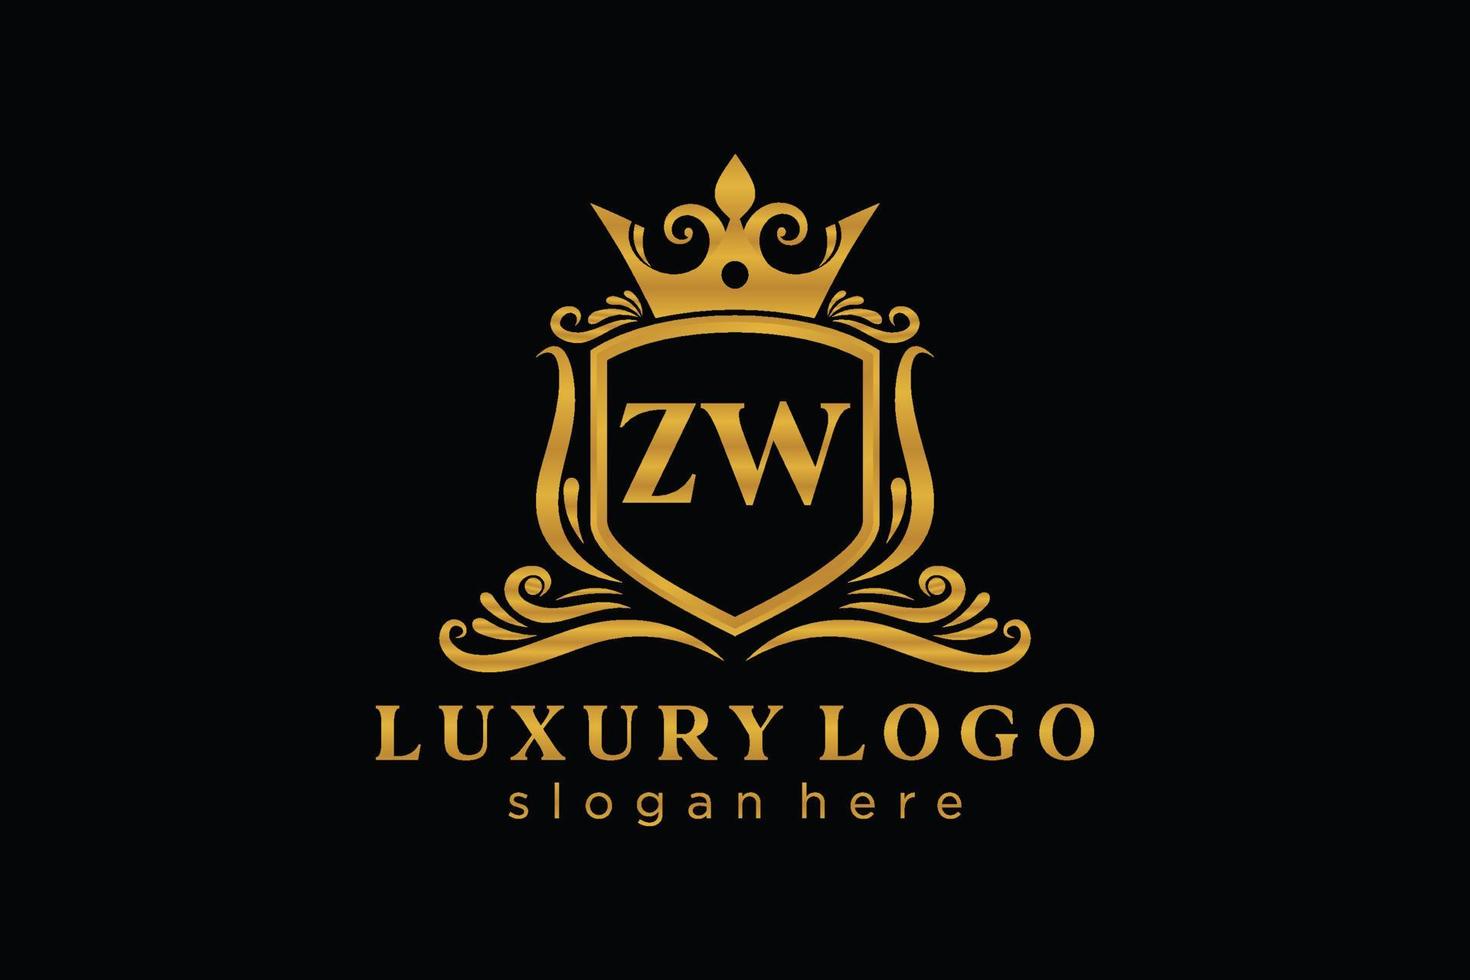 Royal Luxury Logo-Vorlage mit anfänglichem zw-Buchstaben in Vektorgrafiken für Restaurant, Lizenzgebühren, Boutique, Café, Hotel, Heraldik, Schmuck, Mode und andere Vektorillustrationen. vektor